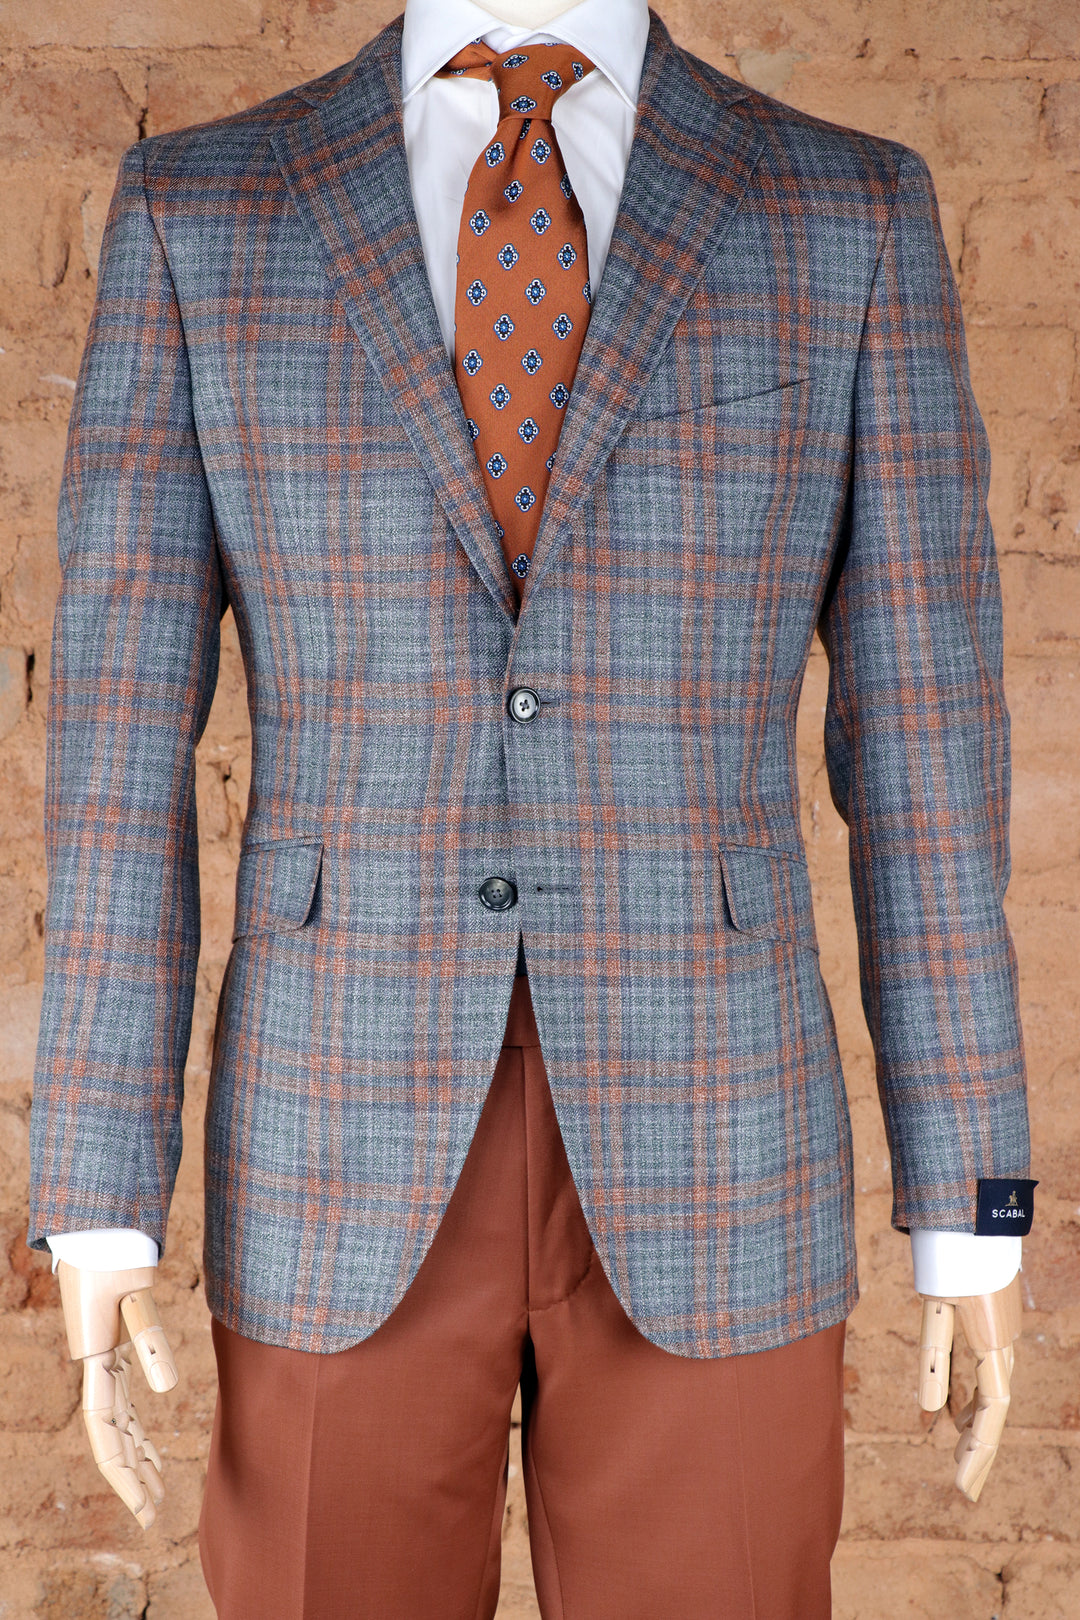 Kenton Unlined Wool, Silk, & Linen Soft Coat in Grey/Orange Plaid